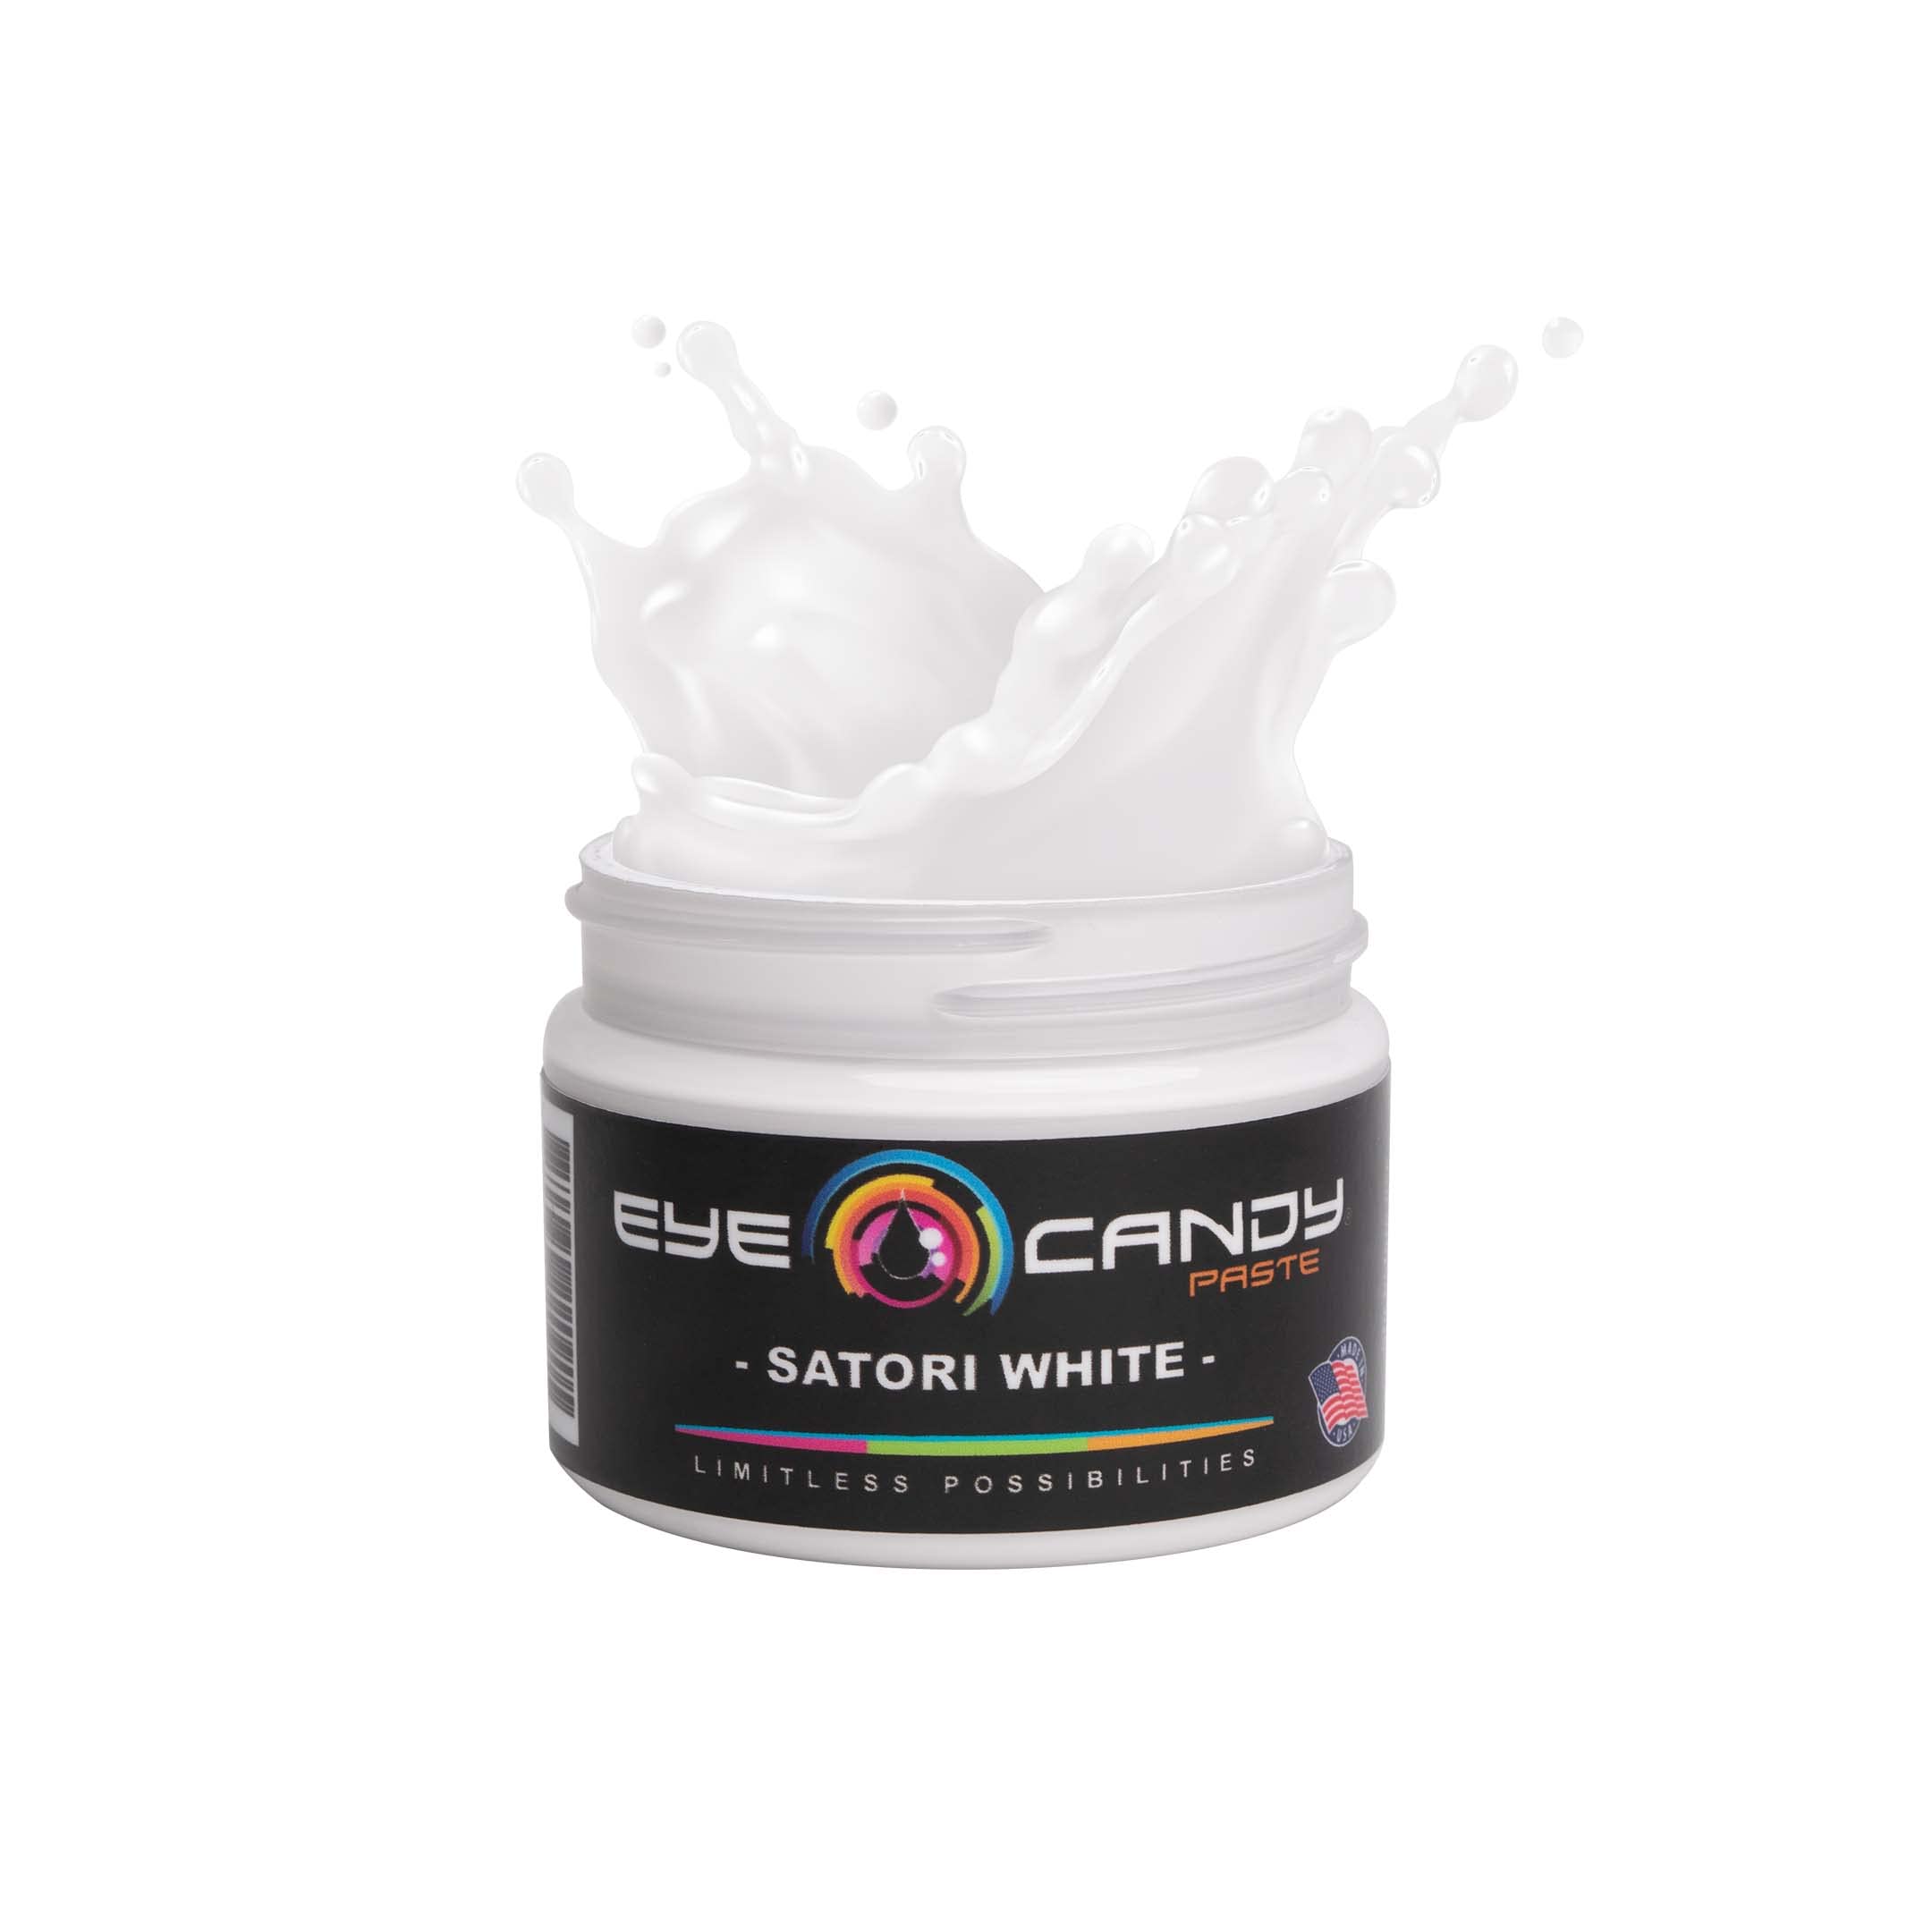 Eye Candy White Resin Pigment PasteSatori White (3 oz Paste / 4 oz Jar), Create Cells and Lacing, Epoxy, Resin Art Paste